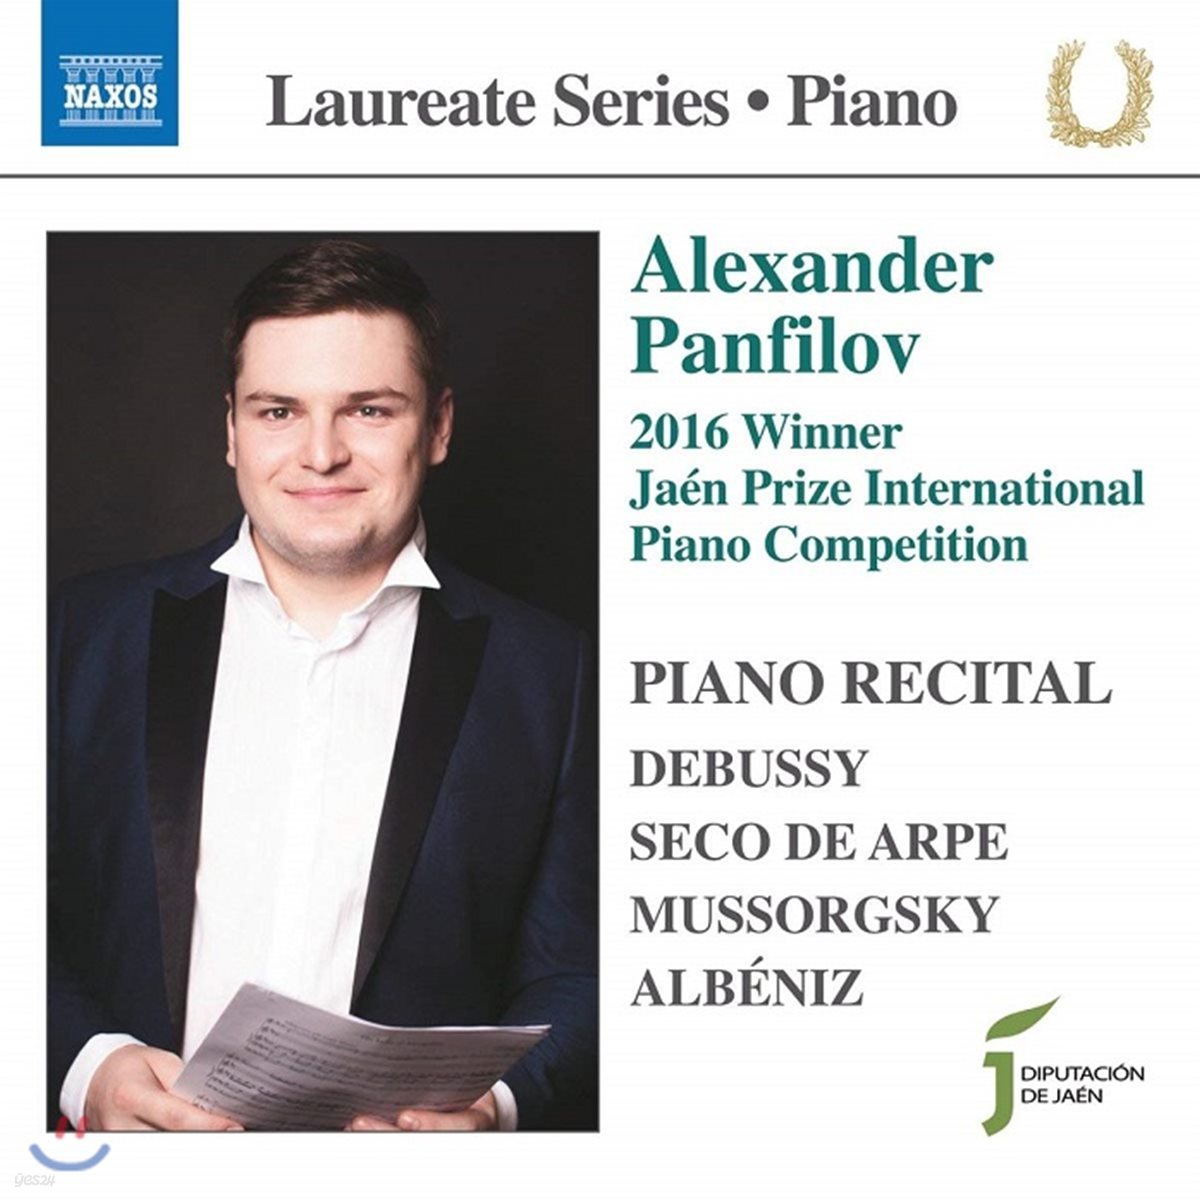 알렉산드르 판필로프 - 피아노 리사이틀 (Alexander Panfilov - Piano Recital)